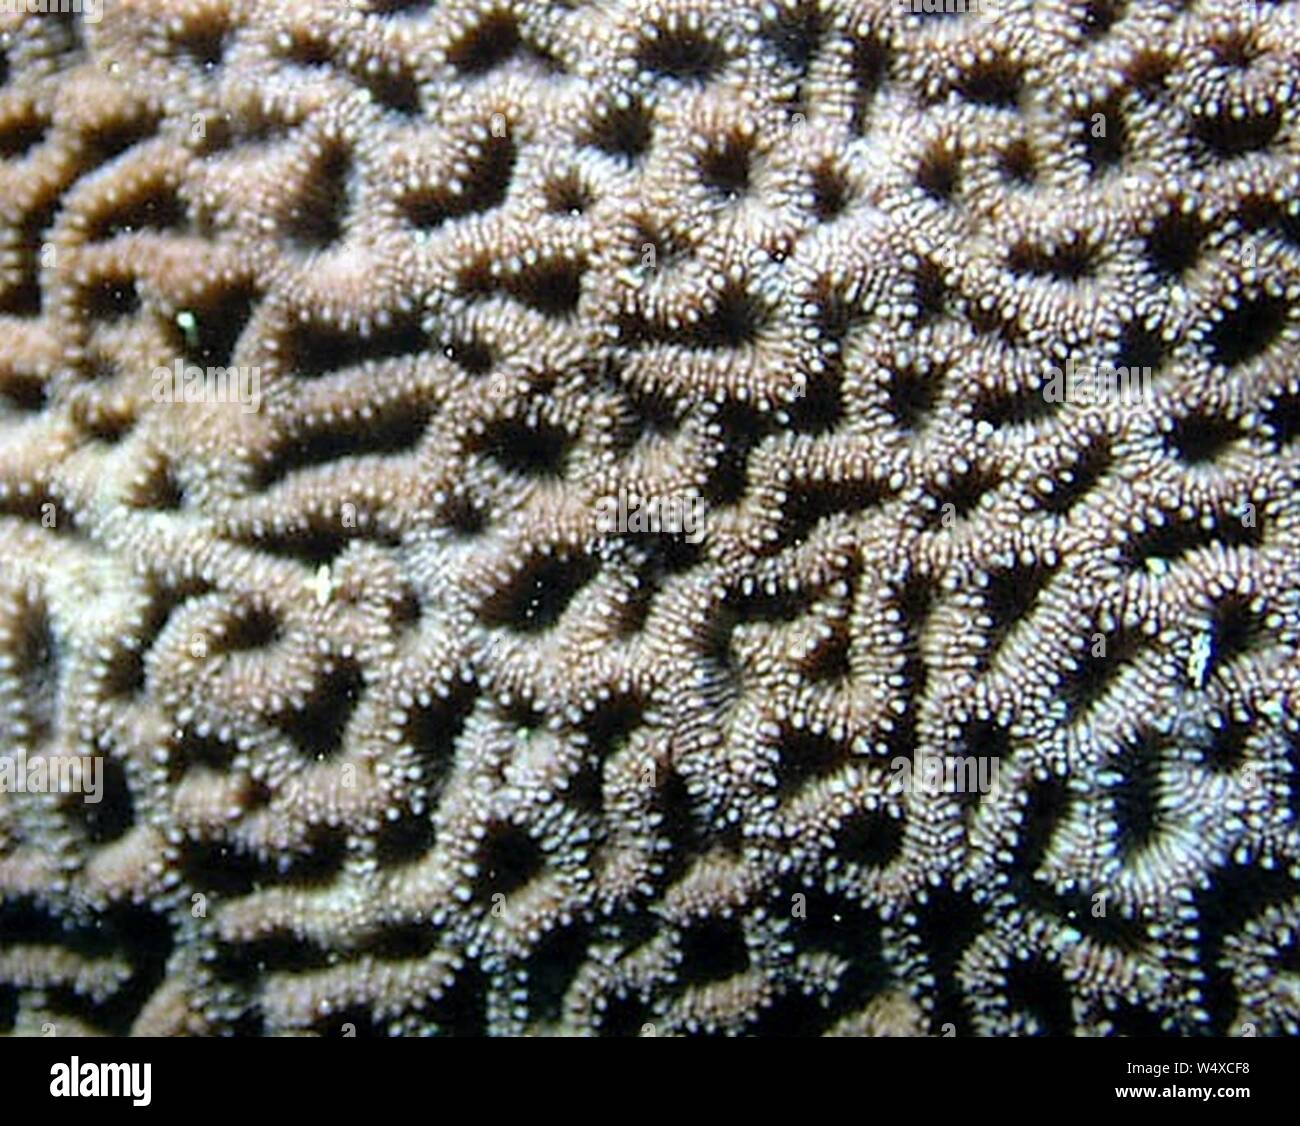 Coscinaraea columna disposición coralitos. Stock Photo